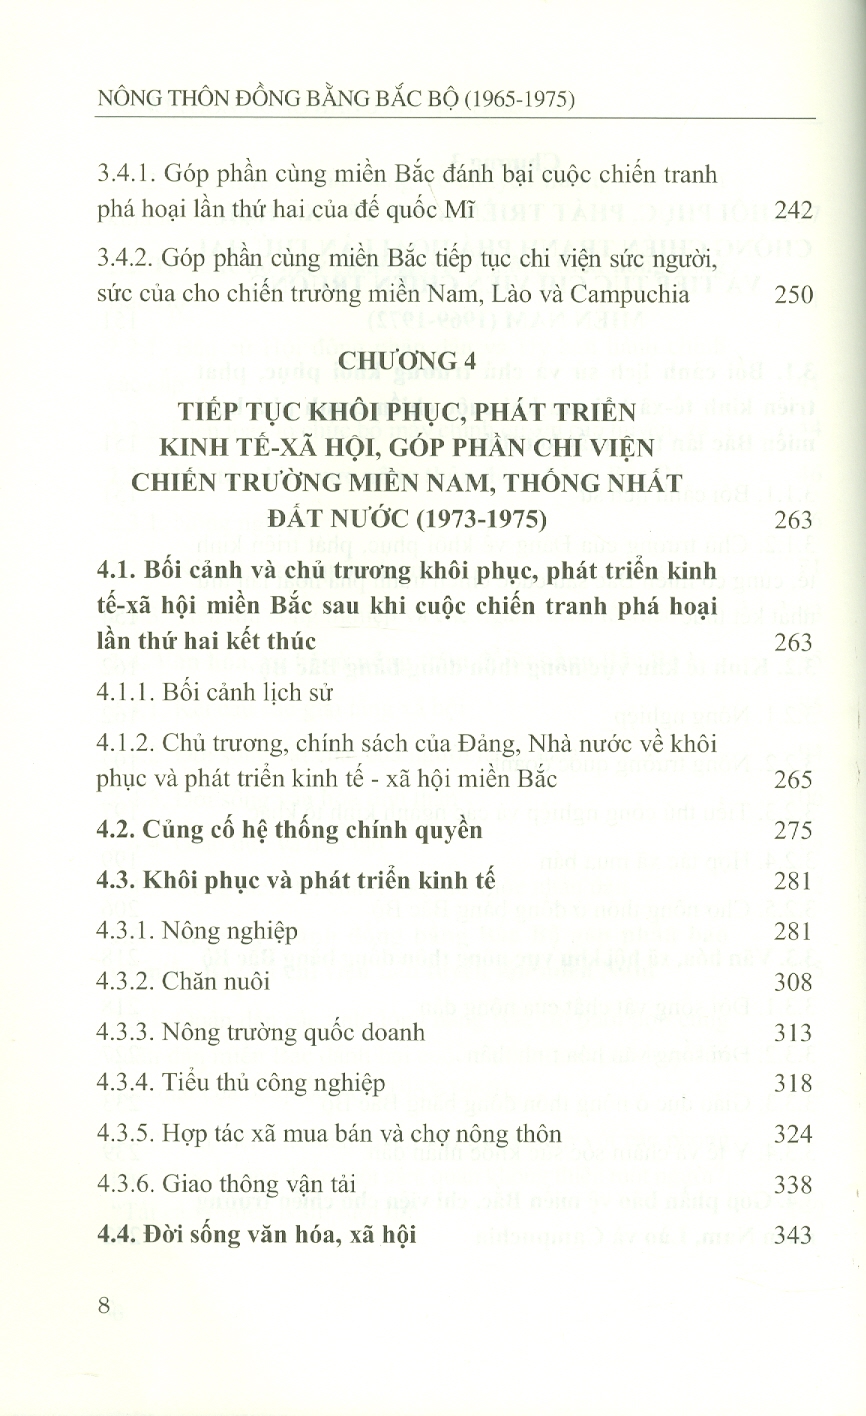 NÔNG THÔN ĐỒNG BẰNG BẮC BỘ (1965 - 1975) (Sách chuyên khảo)